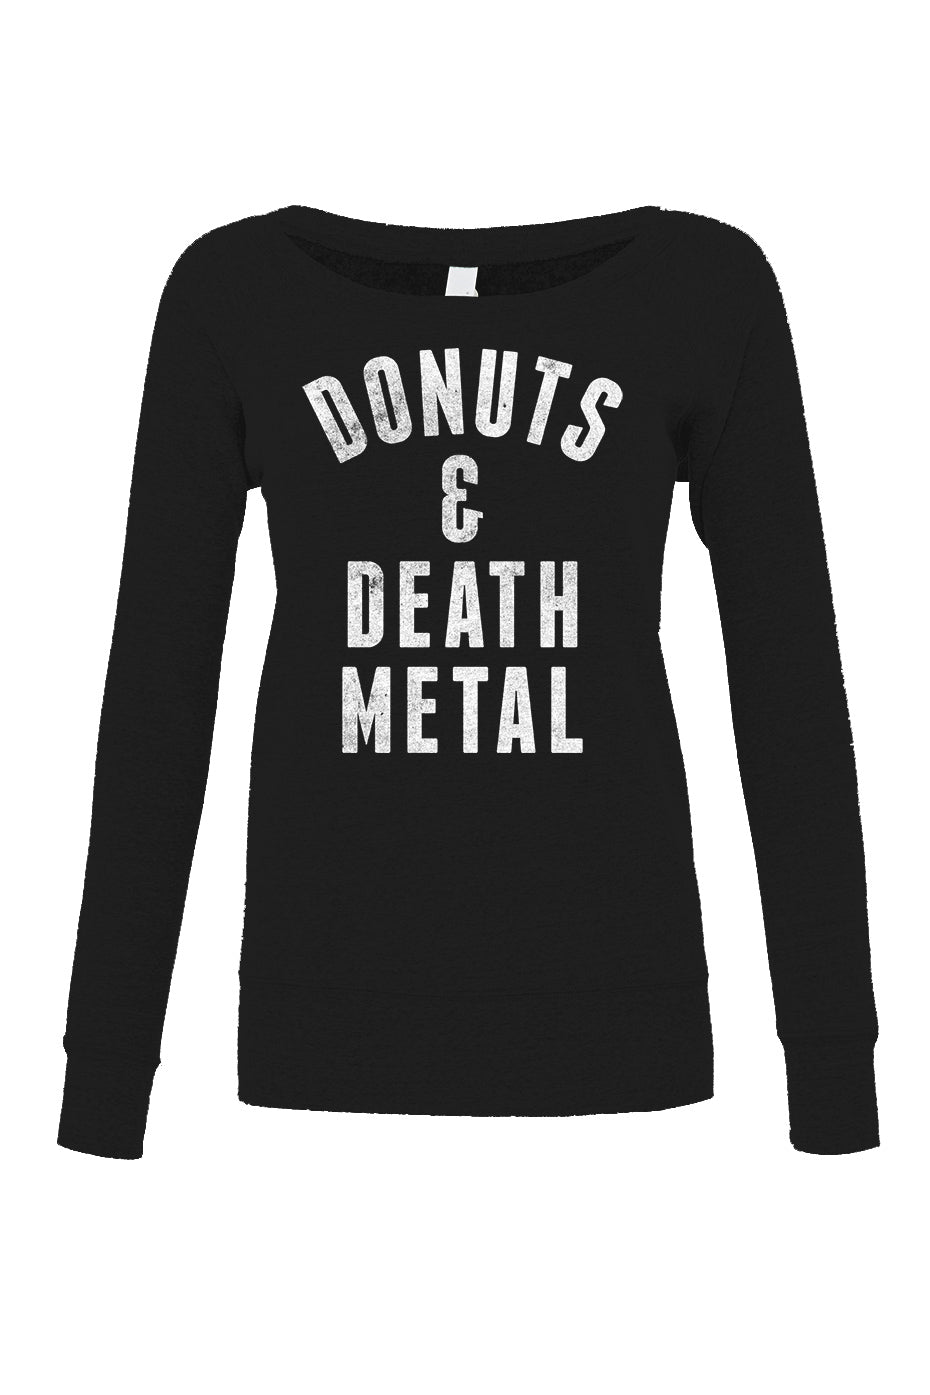 Women's Donuts and Death Metal Scoop Neck Fleece